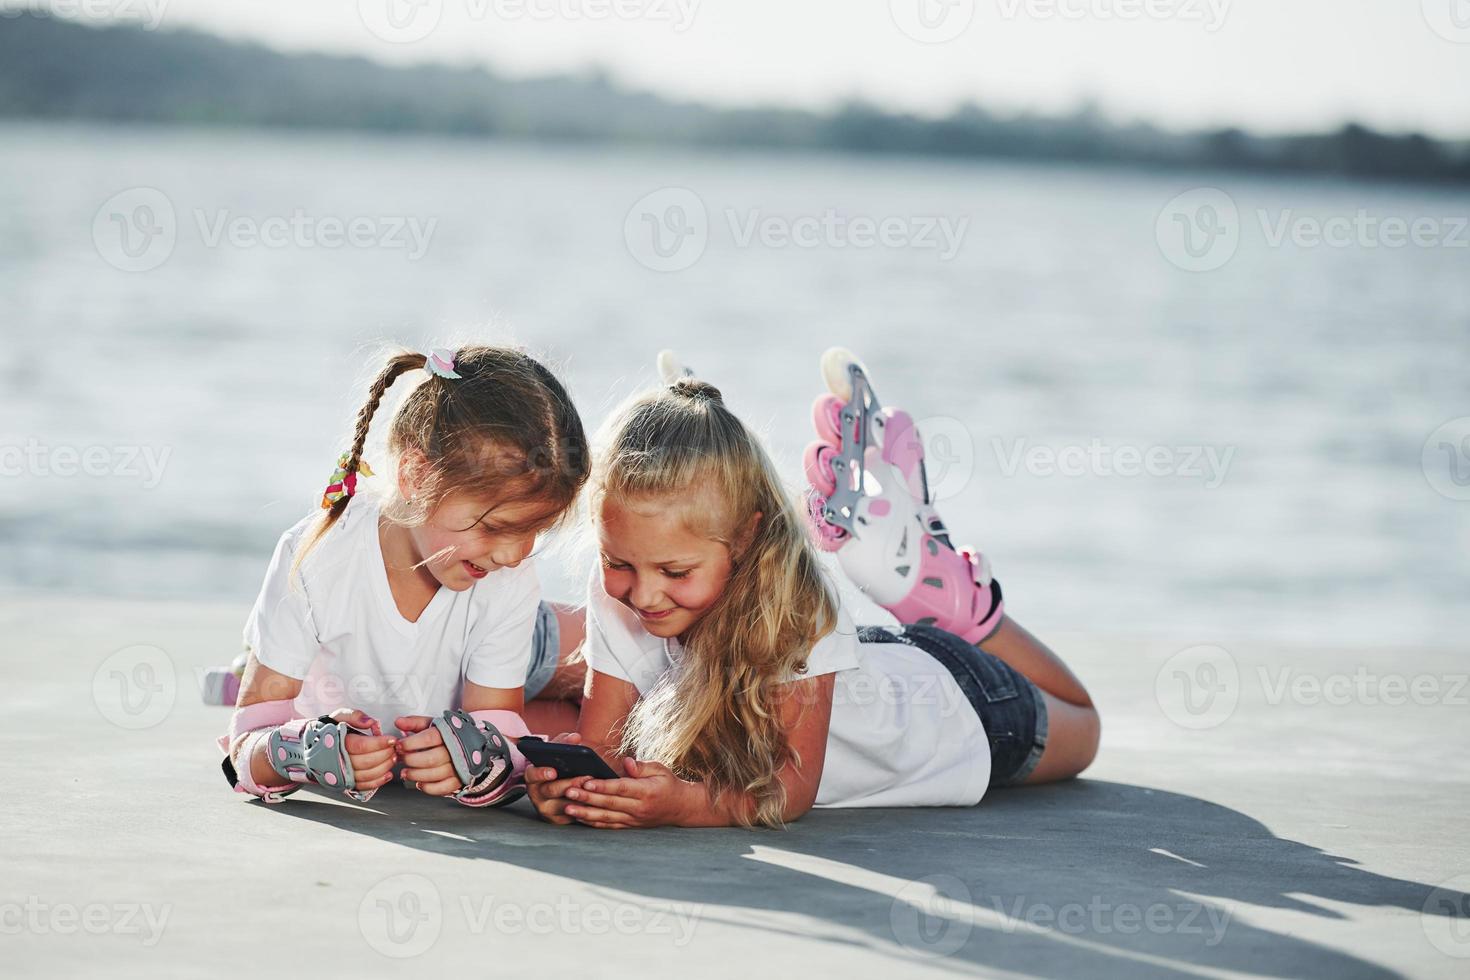 aan het liegen omlaag. twee weinig meisjes met rol skates buitenshuis in de buurt de meer Bij achtergrond foto